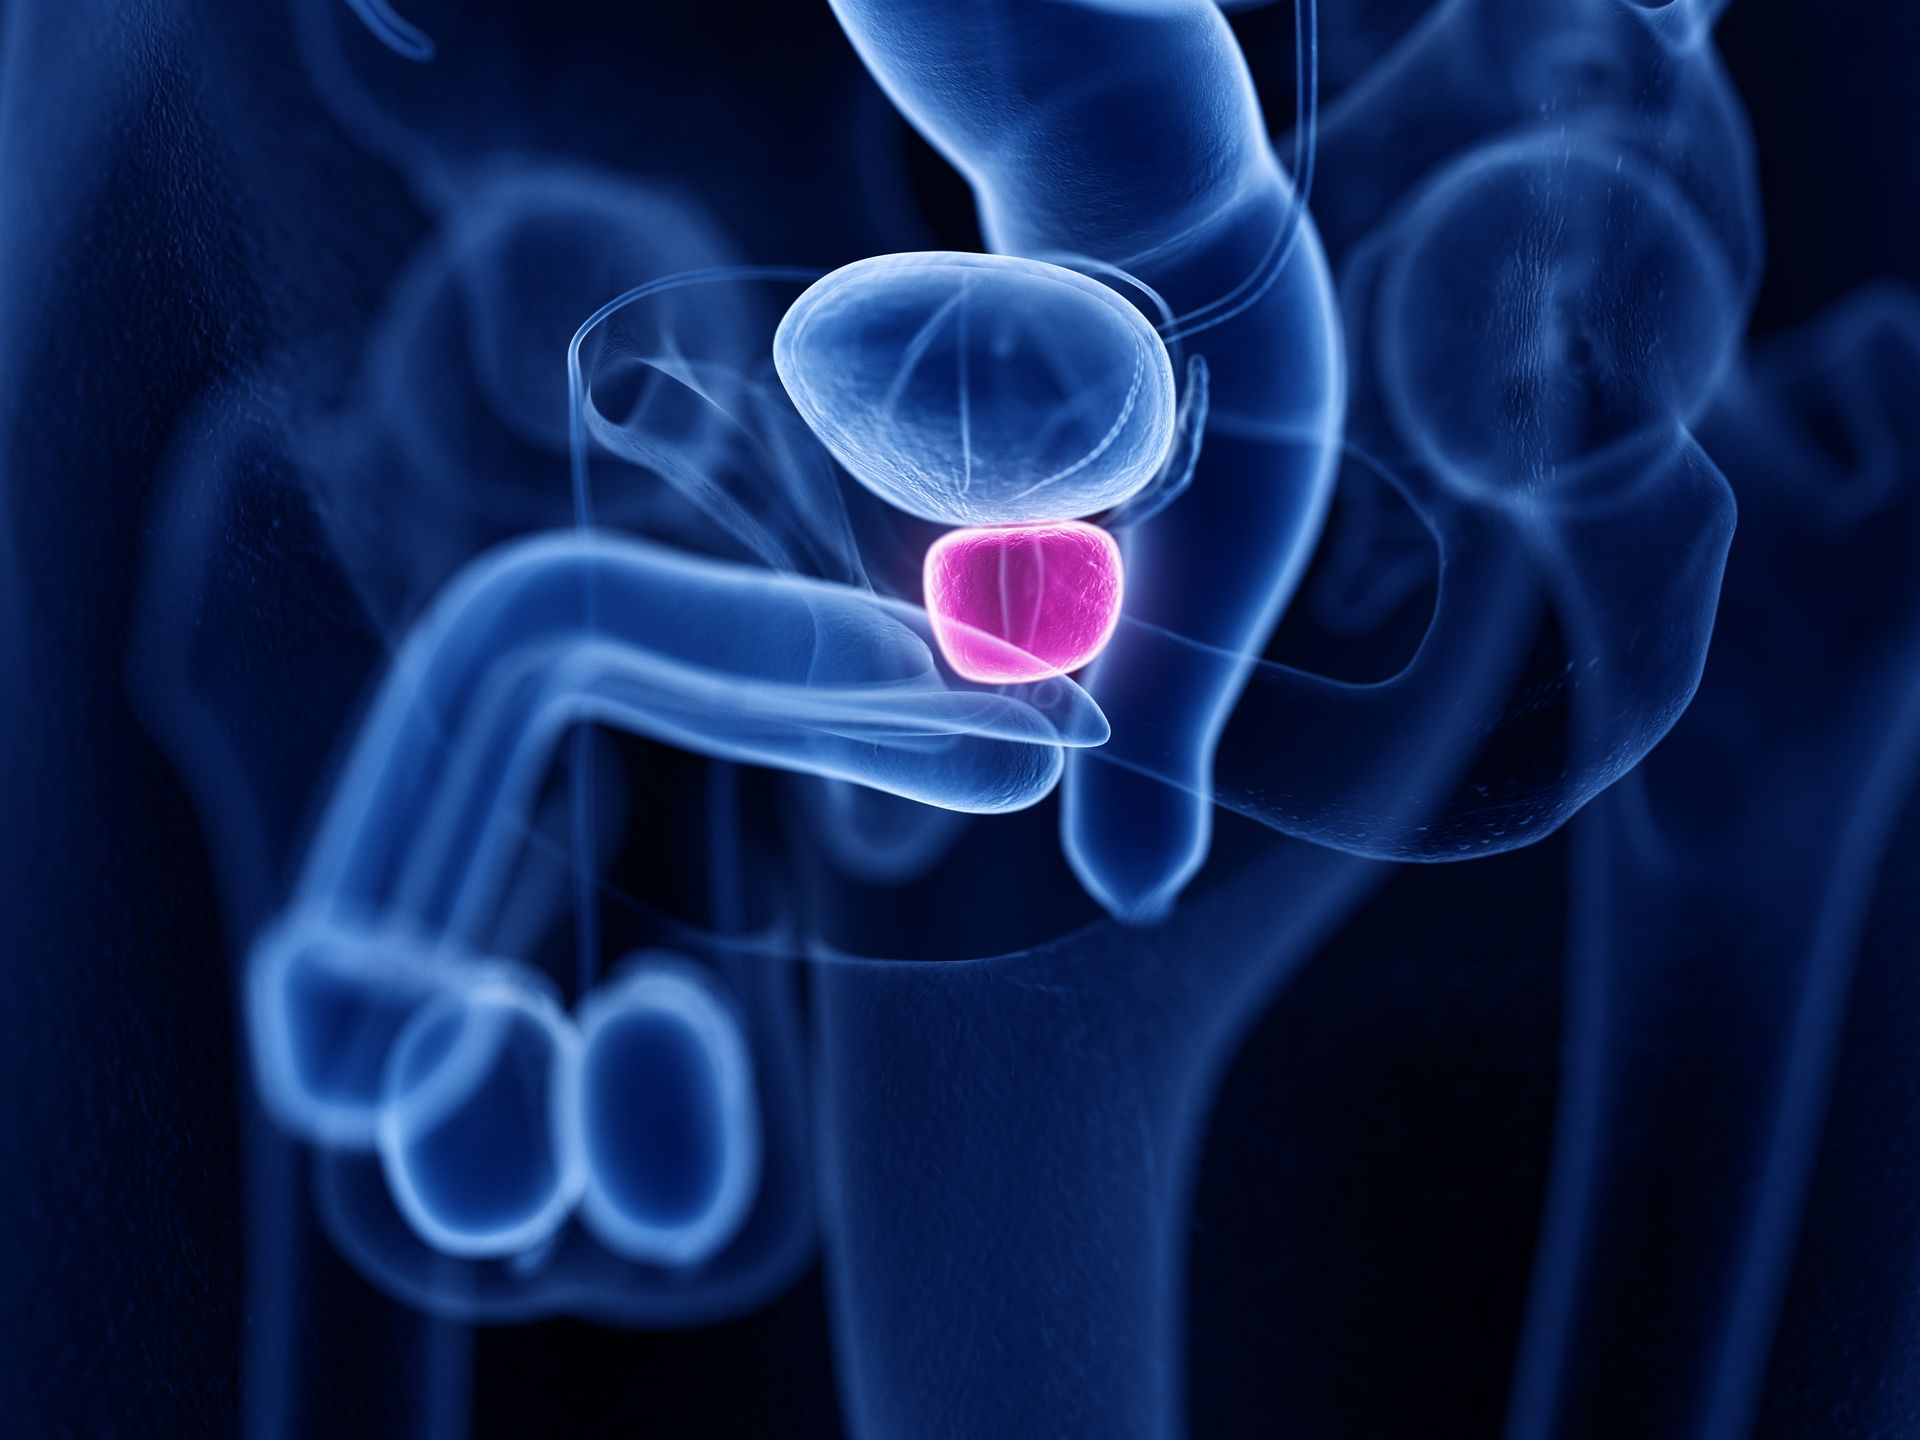 Imagerie représentant la prostate